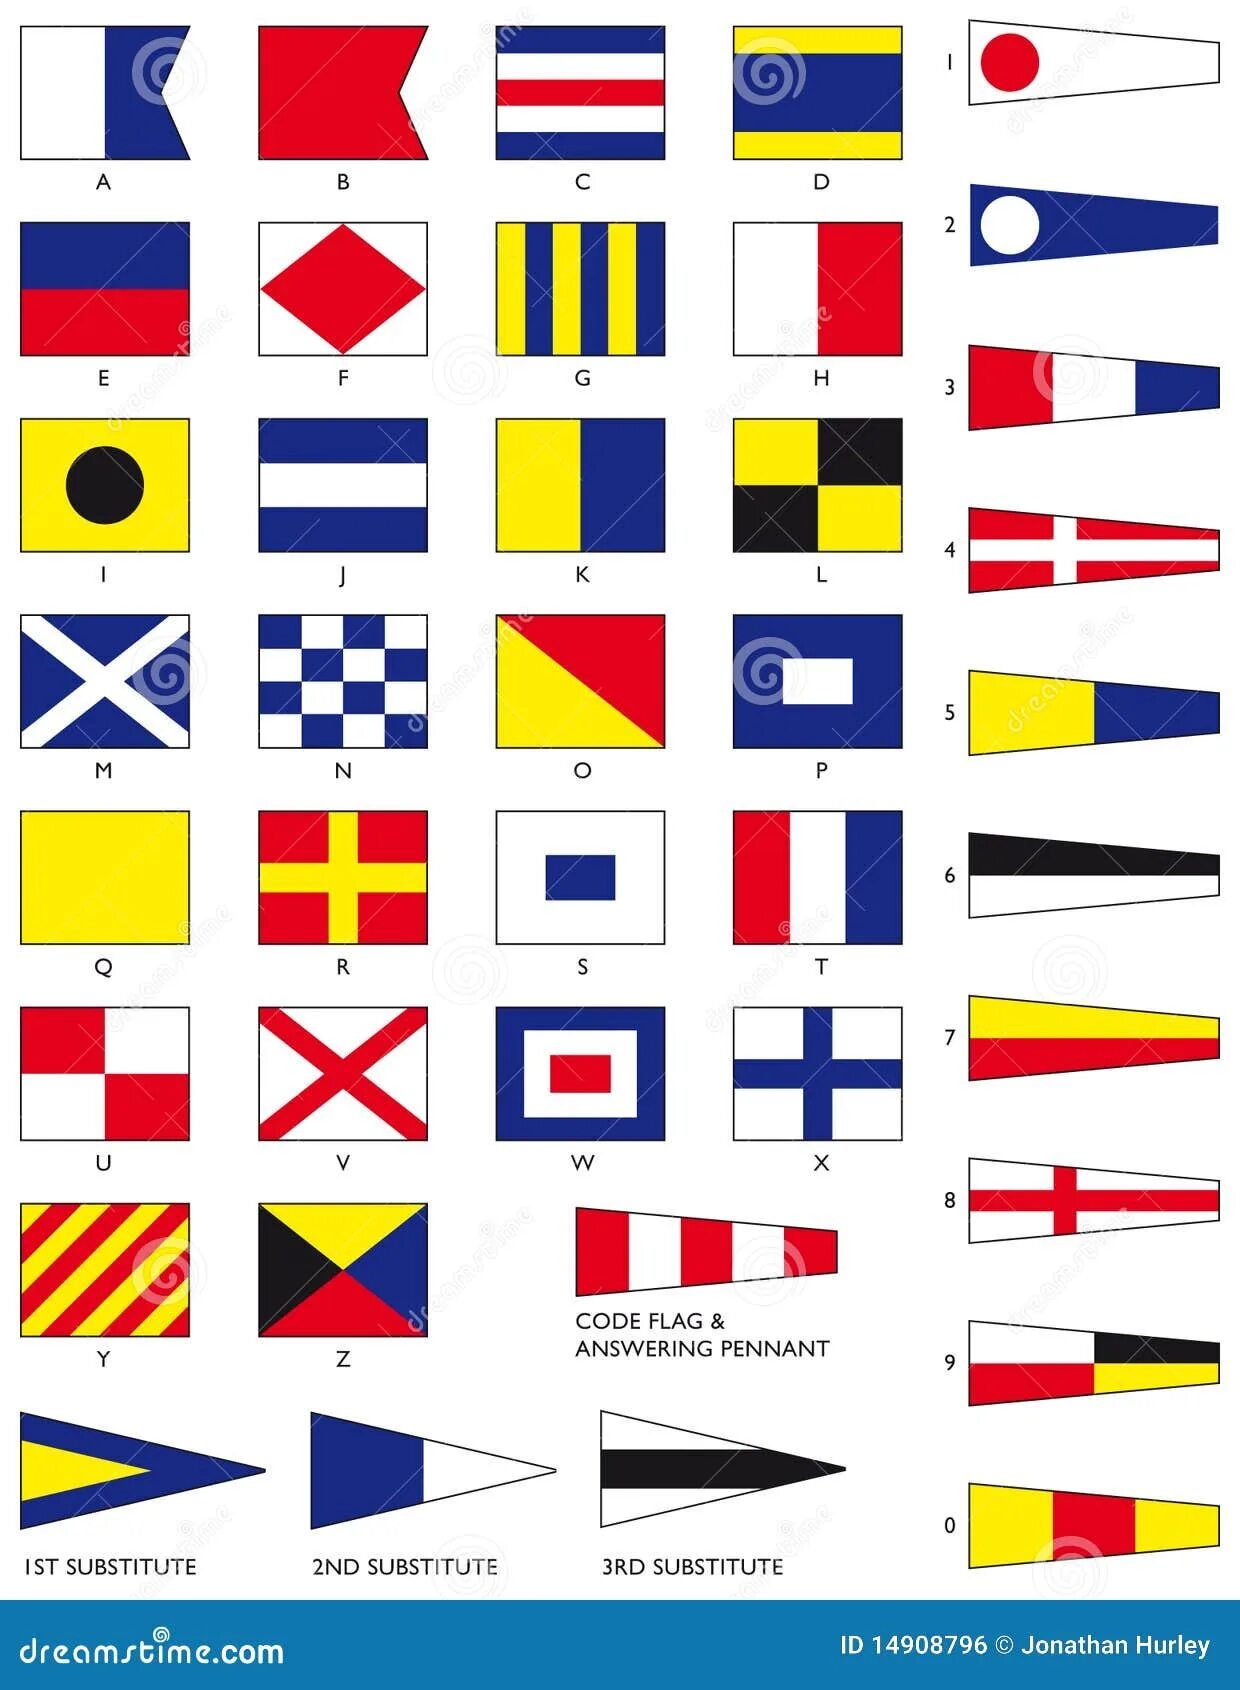 Флаг международного свода. МСС-65 Международный свод сигналов. Флаги Альфа Браво Чарли. Сигнальные флаги. Морские флаги.